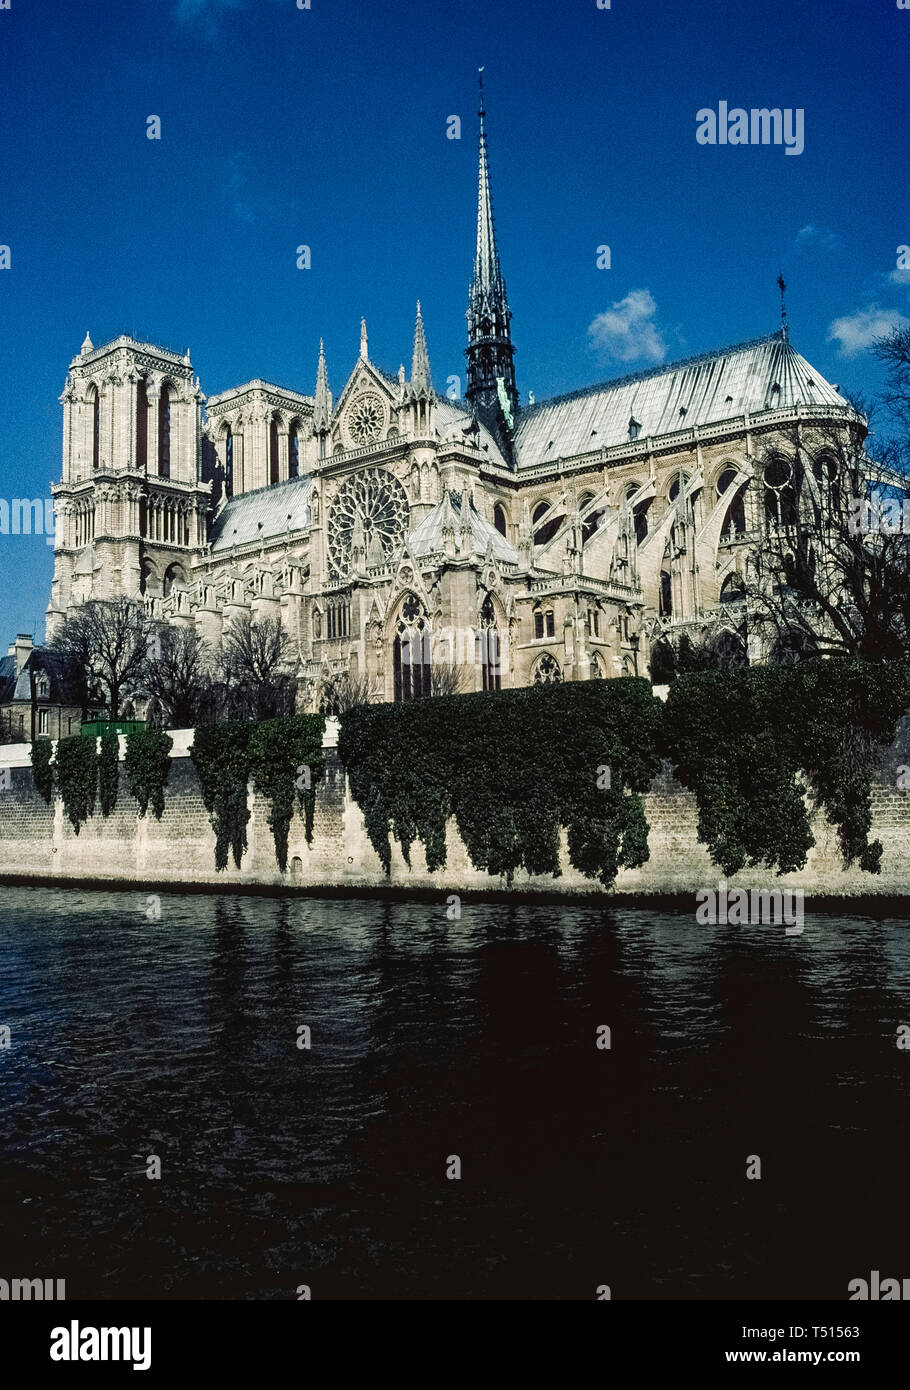 Eine vertikale Ansicht von der Seine der Notre-Dame de Paris, der berühmte katholische Kathedrale in der französischen Hauptstadt, ist in Europa einer der beliebtesten Touristenattraktionen. Dieses Foto wurde vor der historischen Kirche großen Schaden durch einen verheerenden Brand im April 2019 erlitt, und war für die Sanierung geschlossen. Bau der antiken Struktur im 12. Jahrhundert begann und empfohlene verzierten mittelalterliche Architektur, die Zwei Türme enthalten, Glasfenster Rose windows, fliegende Unterstützung Strebepfeilern und den hohen Holz- zentralen Turm (das war im Feuer zerstört). Stockfoto